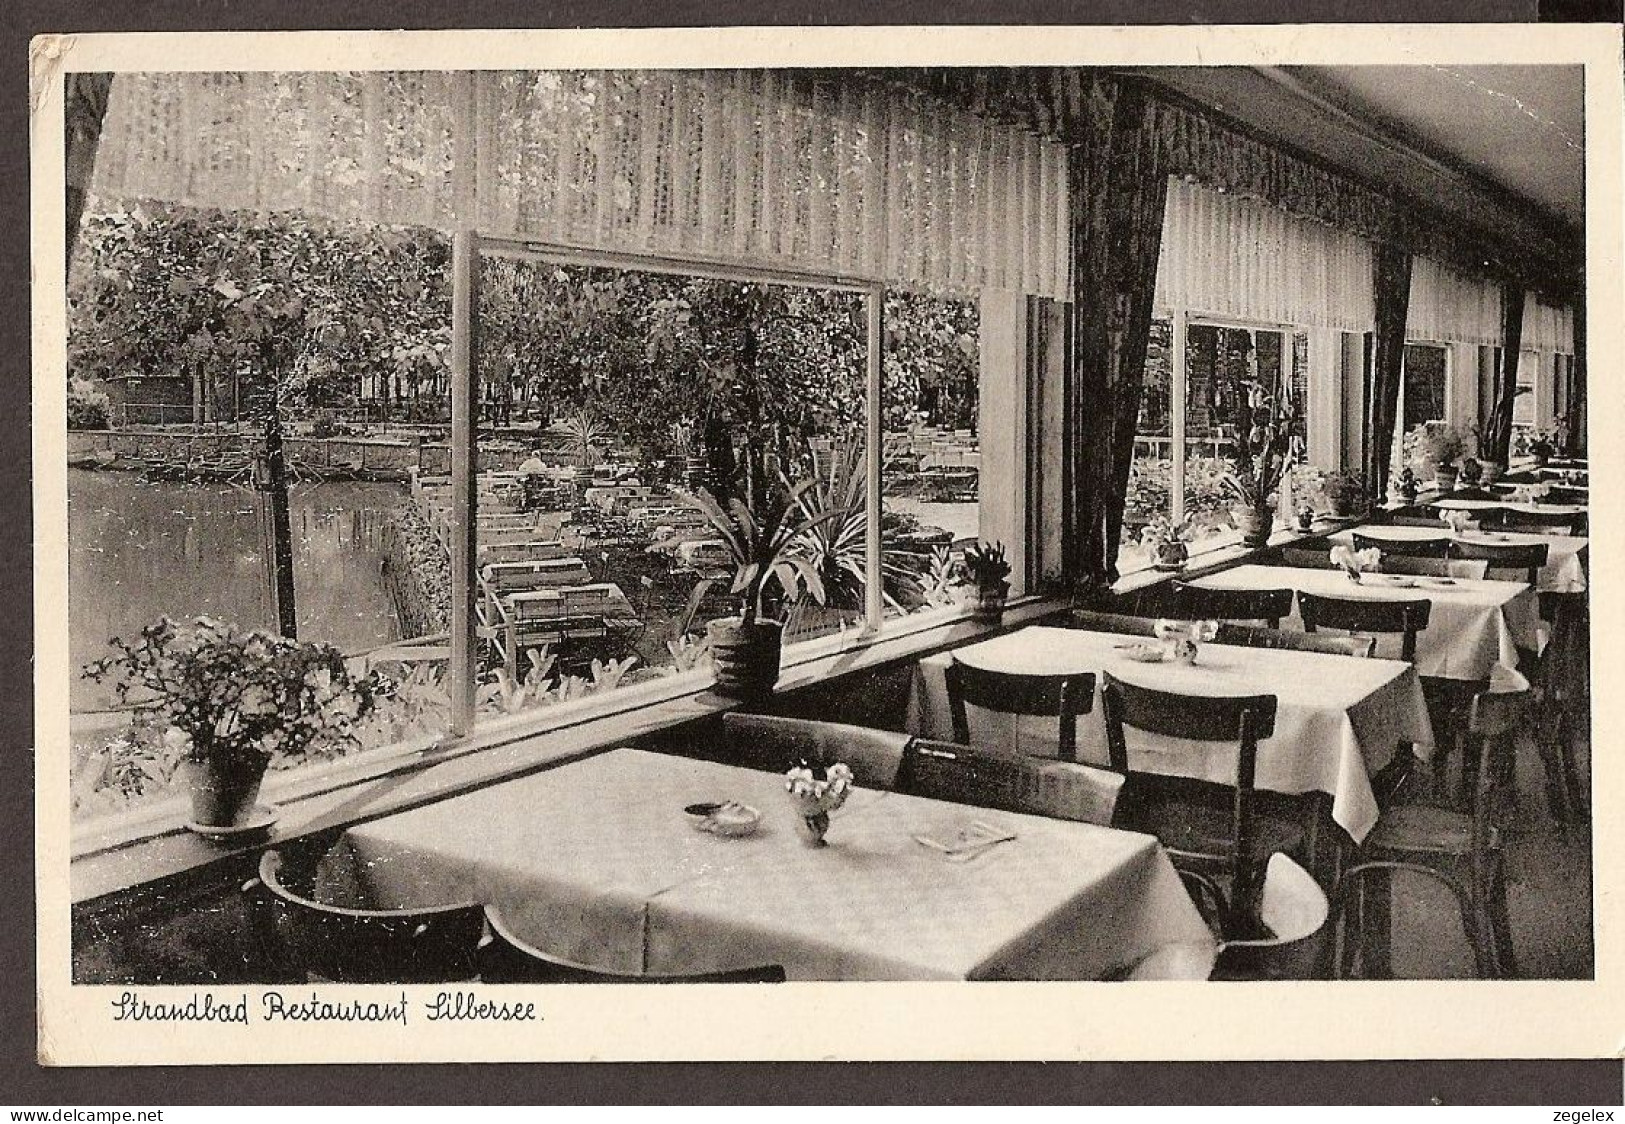 Kapellen B. Mörs - Strandbad Restaurant Silbersee  - Mörs